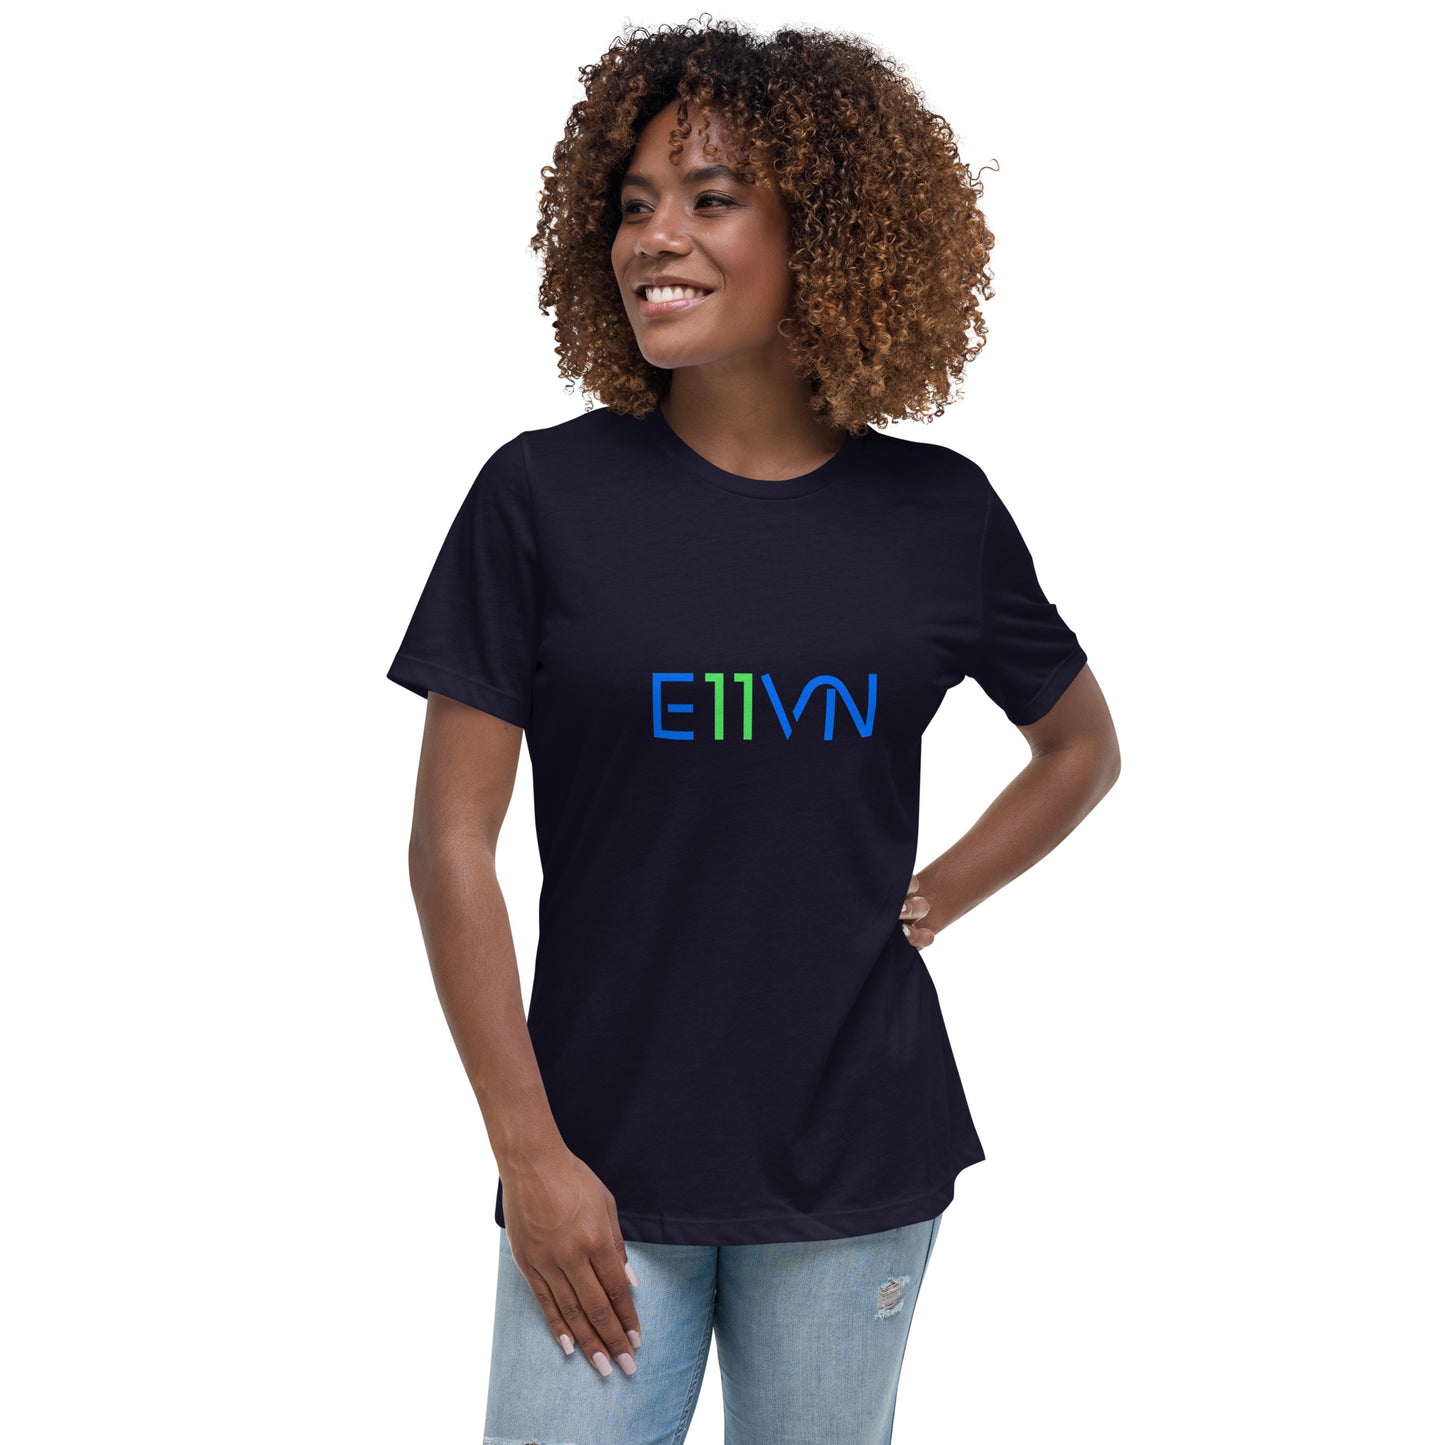 E11VN Women's T-Shirt